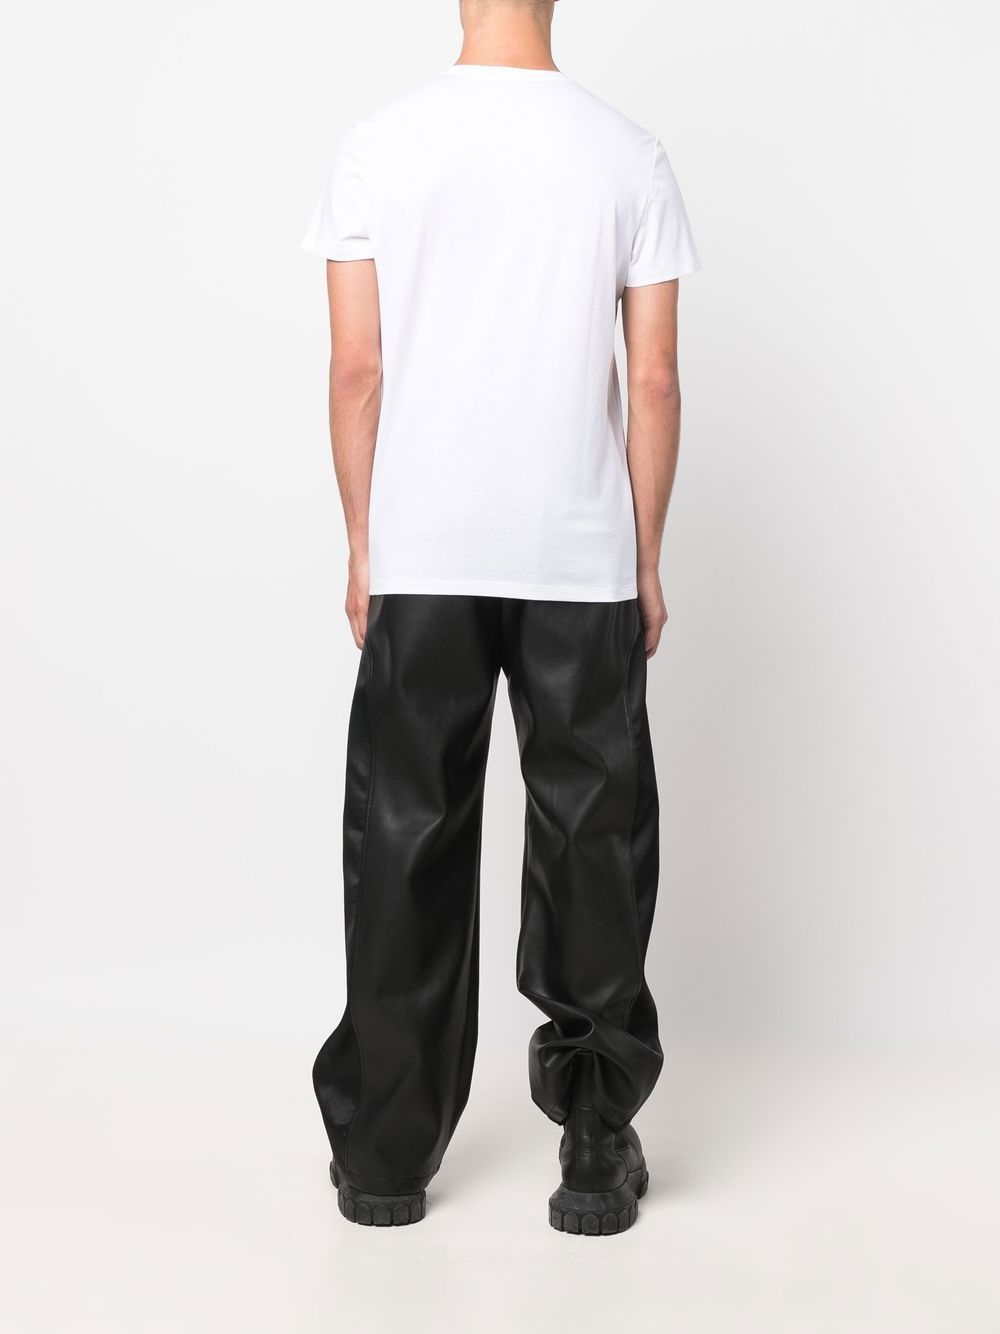 BALMAIN Classic SS T-Shirt White/Gold - MAISONDEFASHION.COM